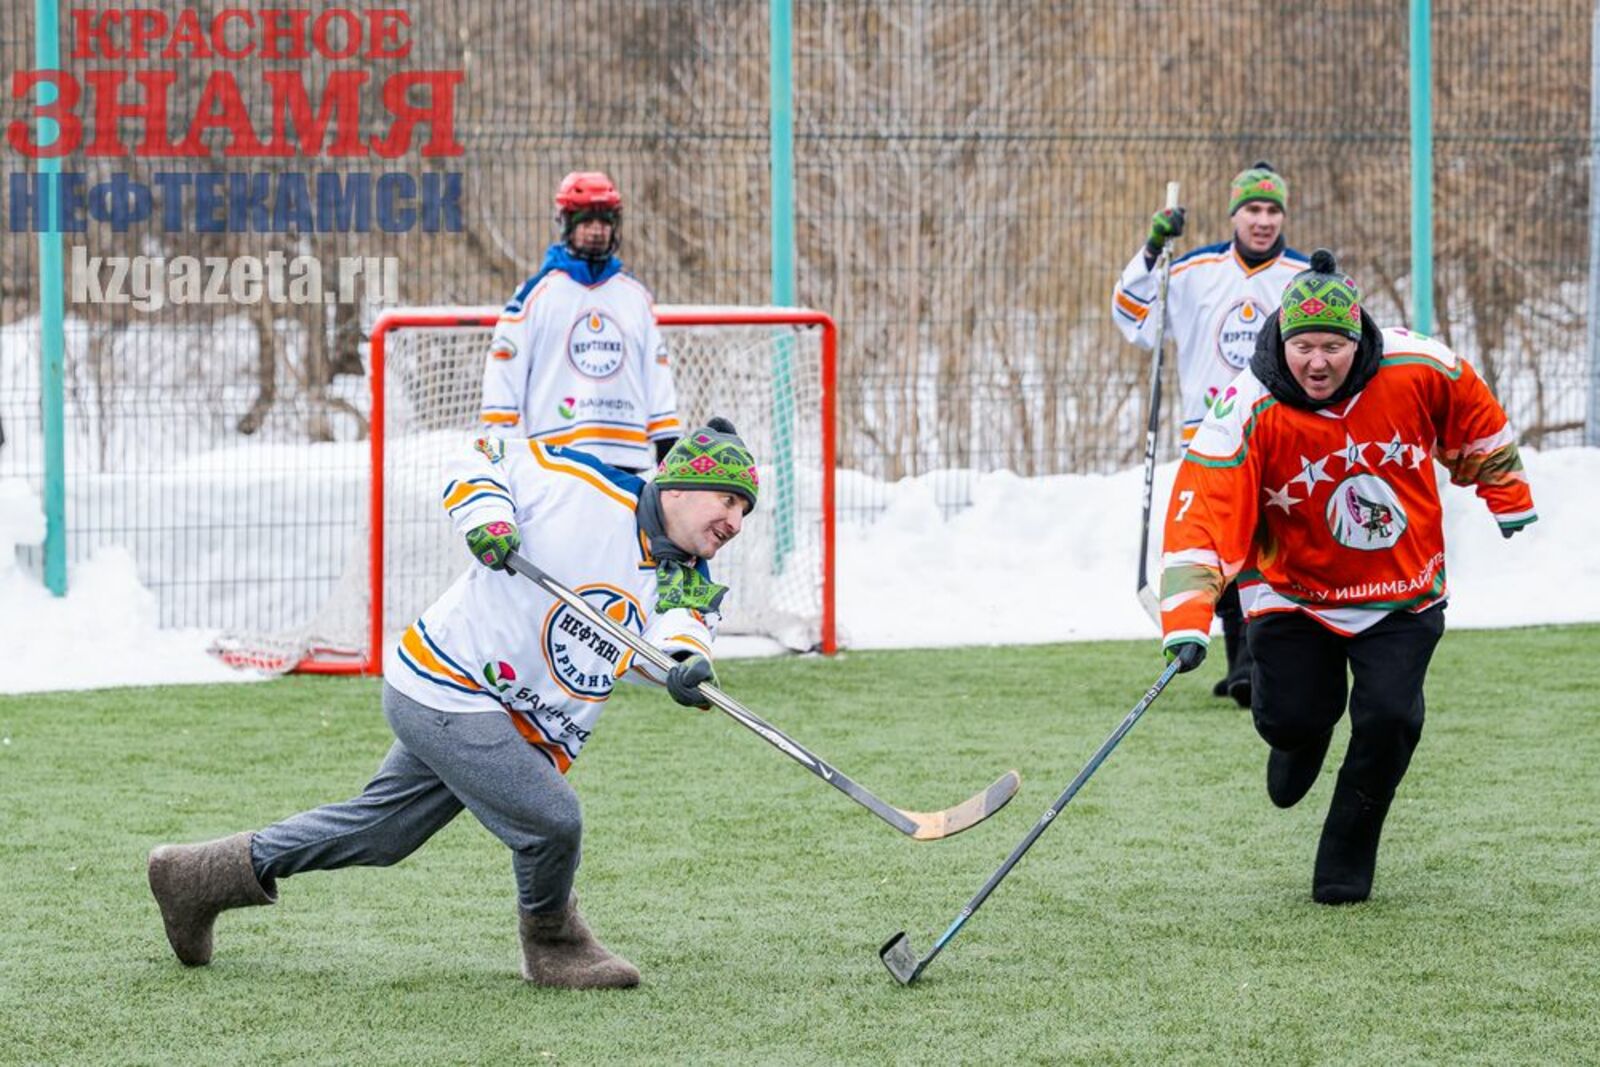 Хоккей с мячом в валенках и волейбол на снегу – традиционные состязания зимней спартакиады нефтяников.